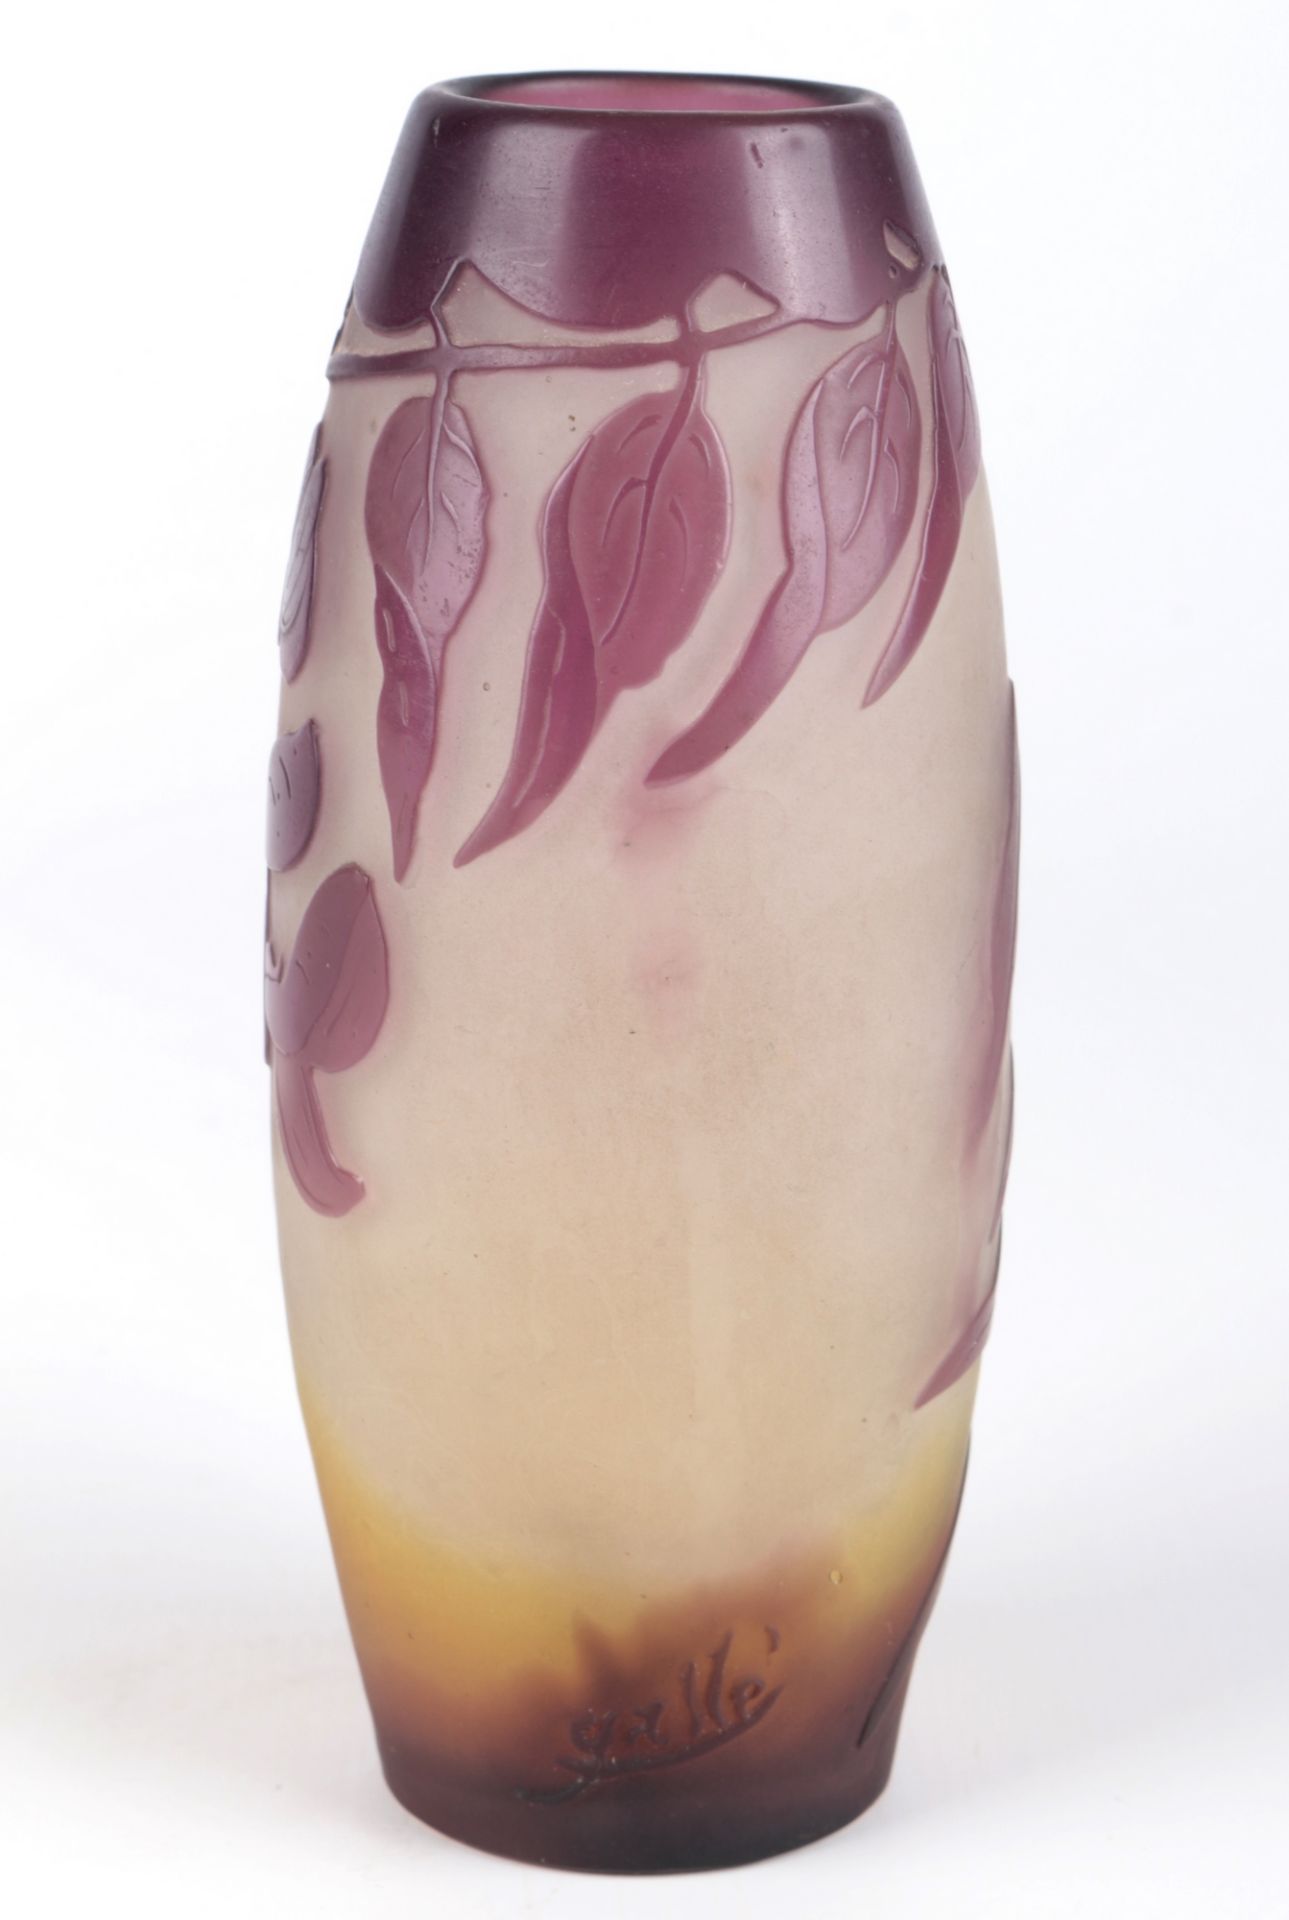 Emile Galle (1846-1904) Jugendstil Vase, french art nouveau glass vase, - Image 2 of 6